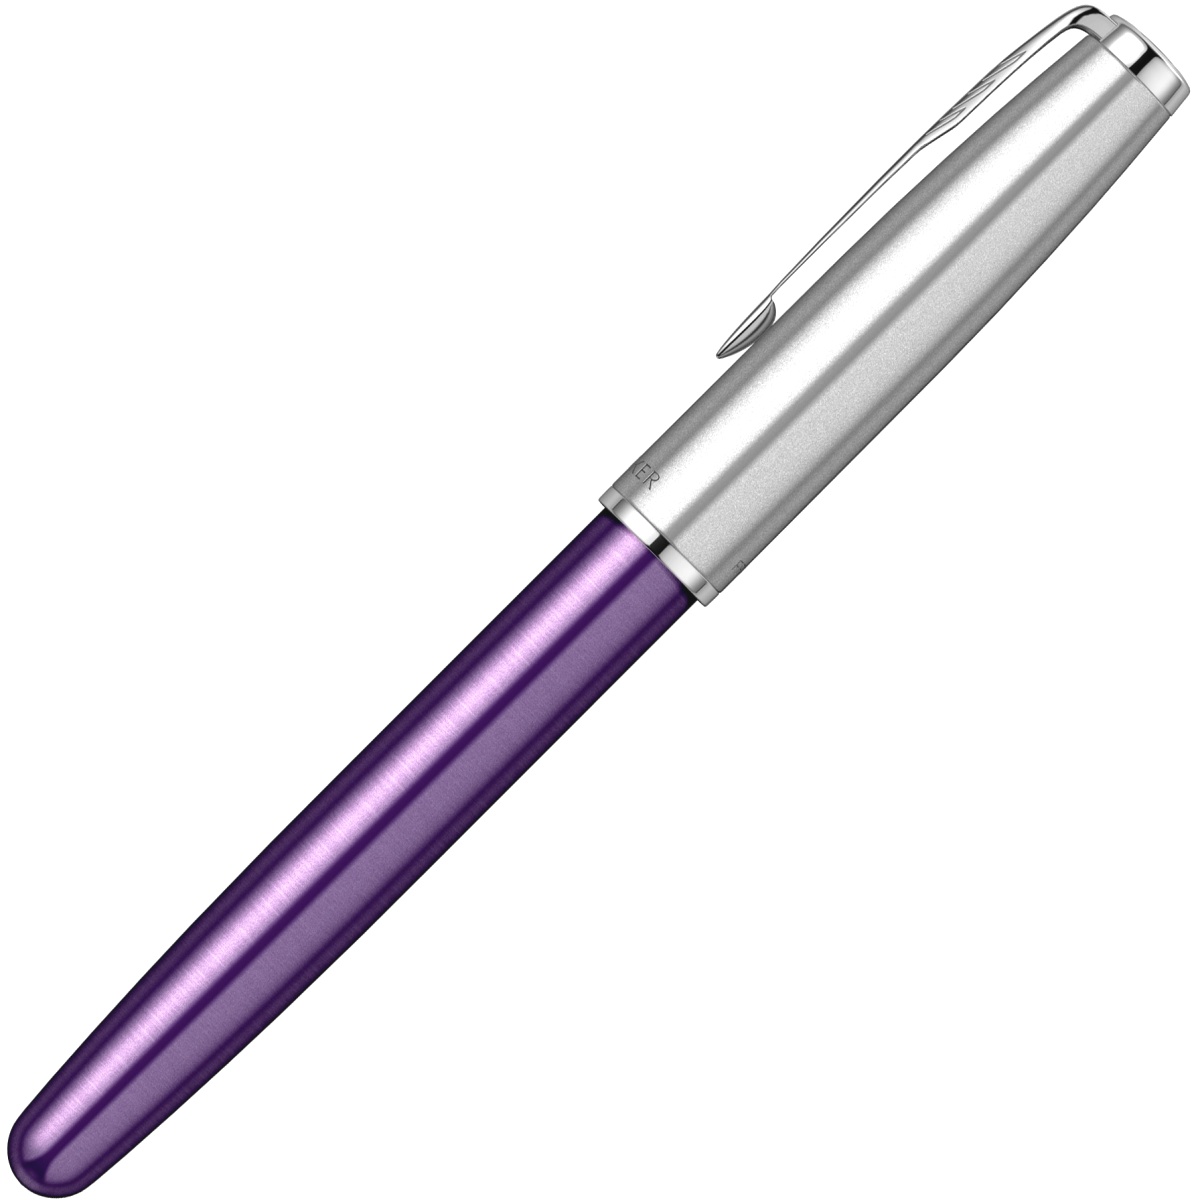  Ручка перьевая Parker Sonnet Essential SB F545, Violet CT (Перо F), фото 5